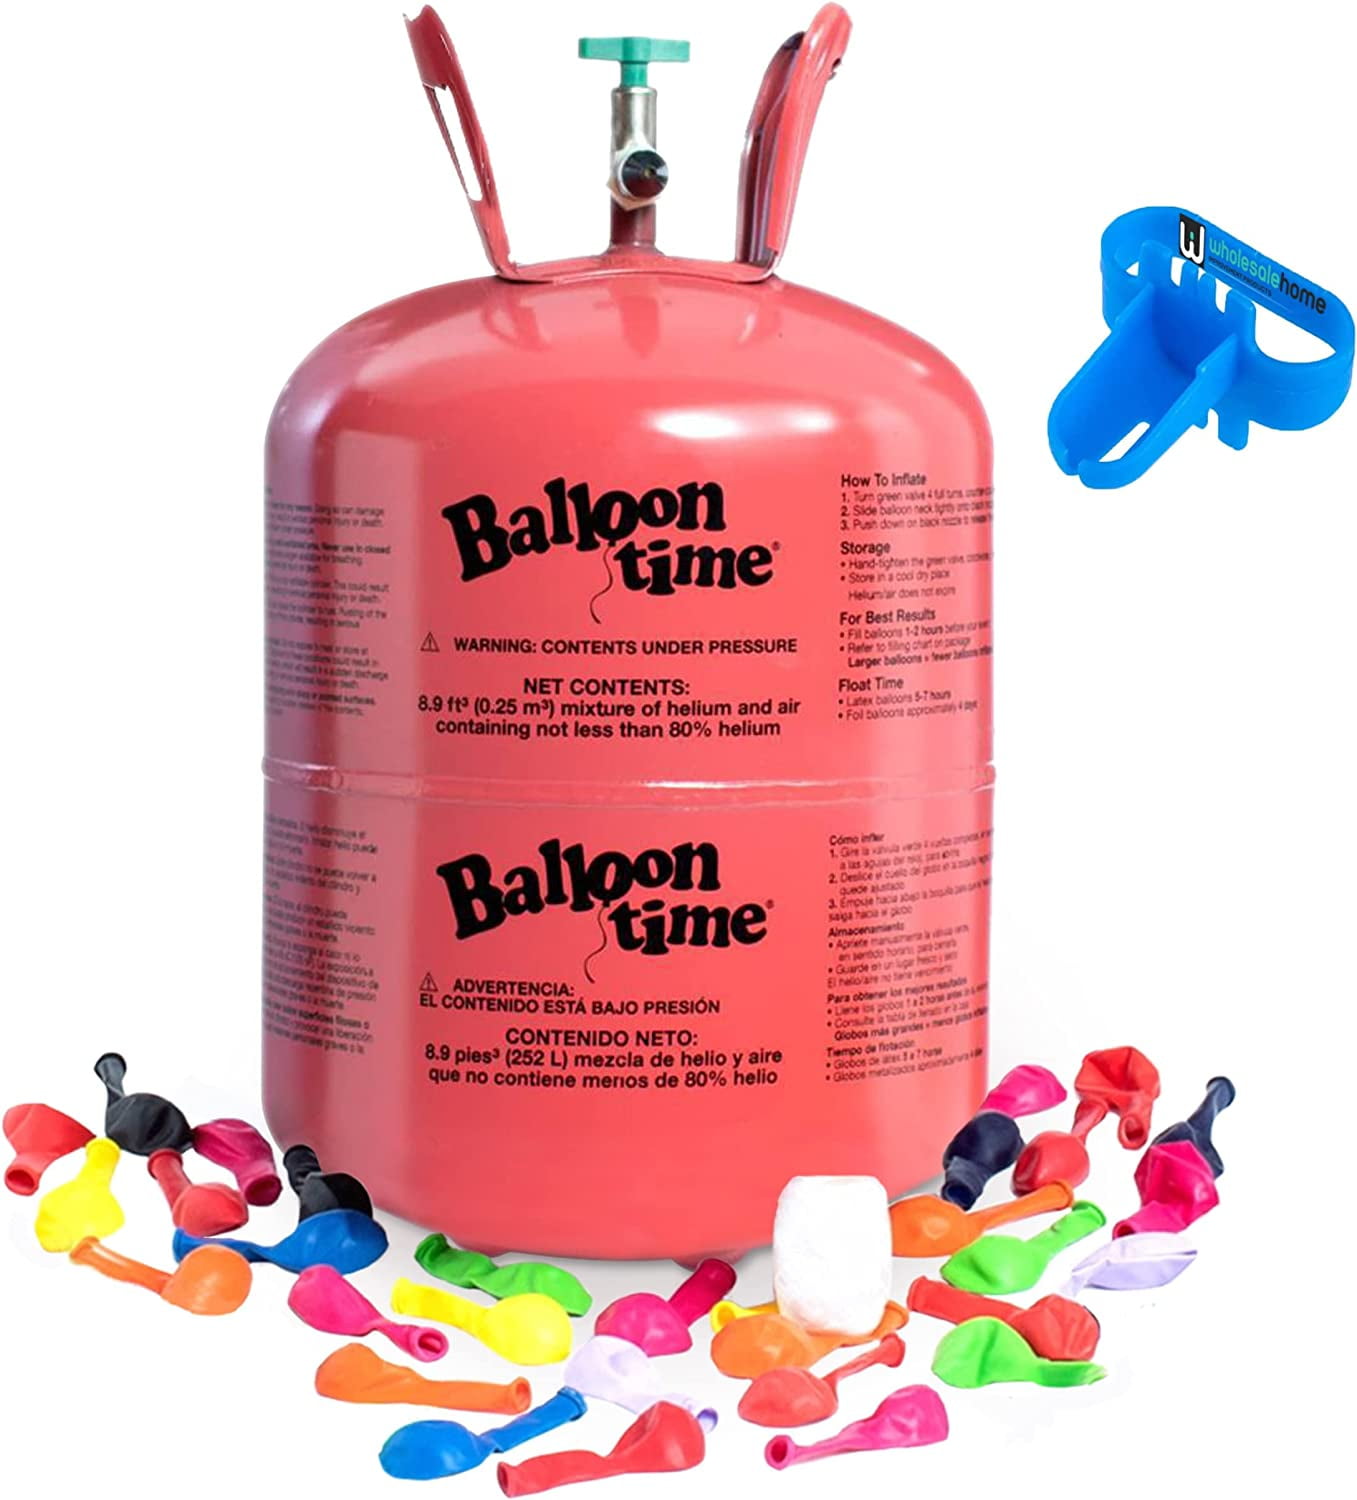 Helium Tank with 50 Balloons and White Ribbon + 12 White Balloon